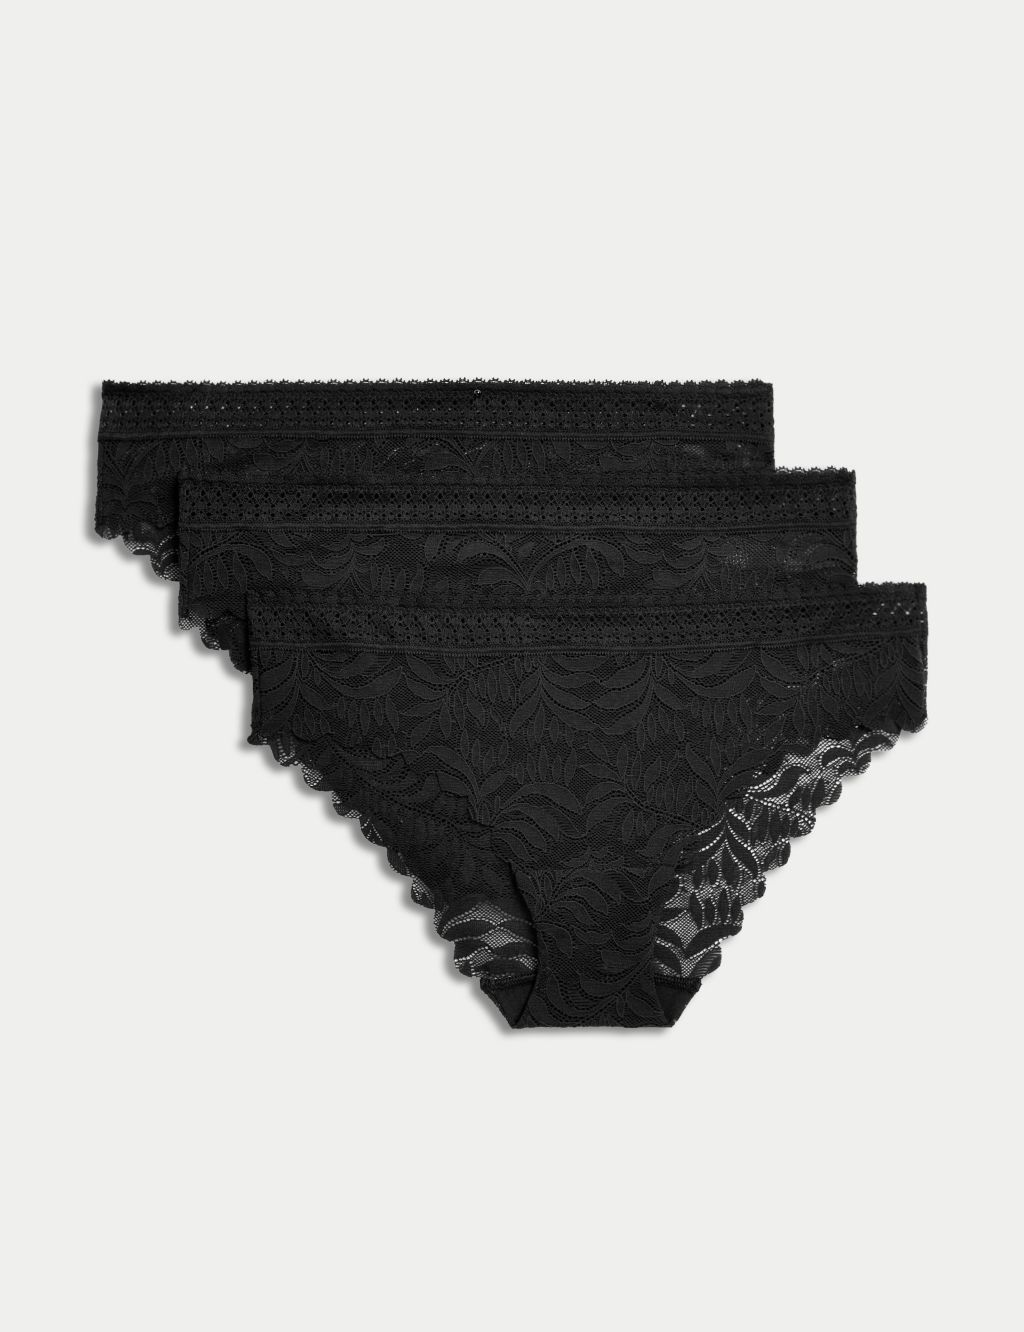 Ladies Black Briefs Size 12 Show 10 Baby Muslim Lady'S Underwear Multipack  Ladies M S Knickers Ladies High Leg Pants N : : Fashion